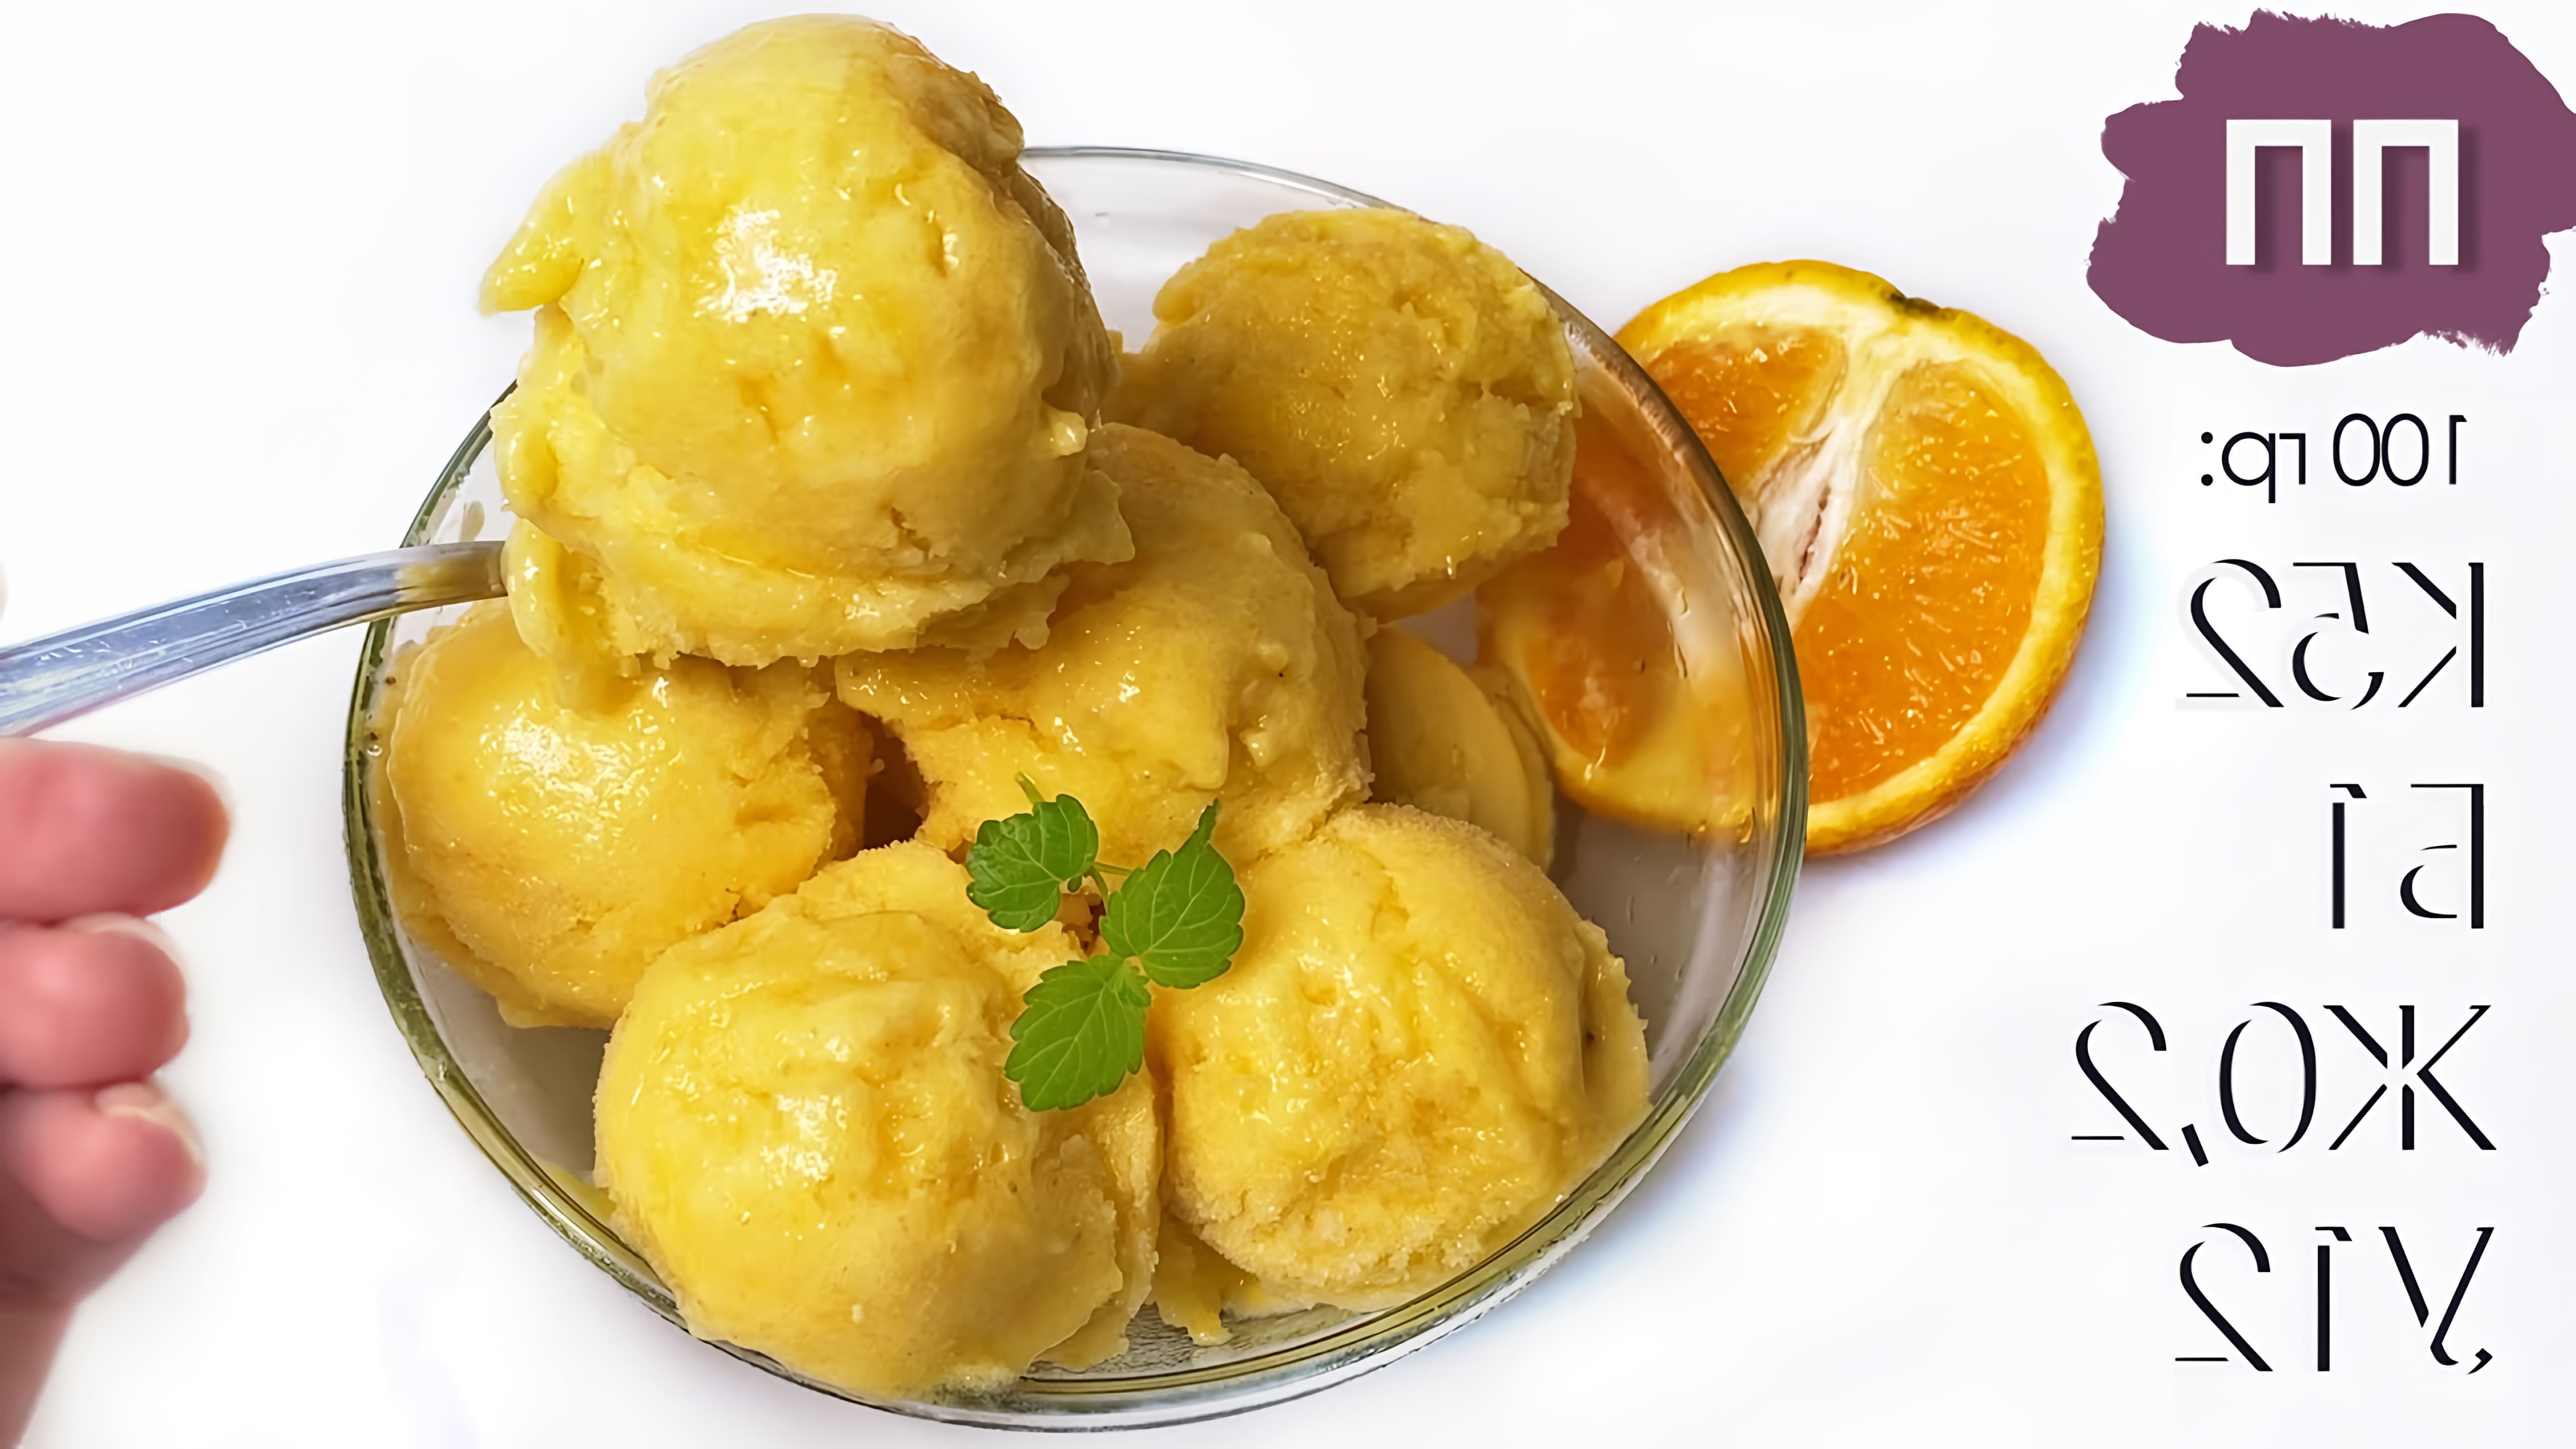 В этом видео демонстрируется процесс приготовления апельсинового сорбета из двух ингредиентов - апельсинов и бананов